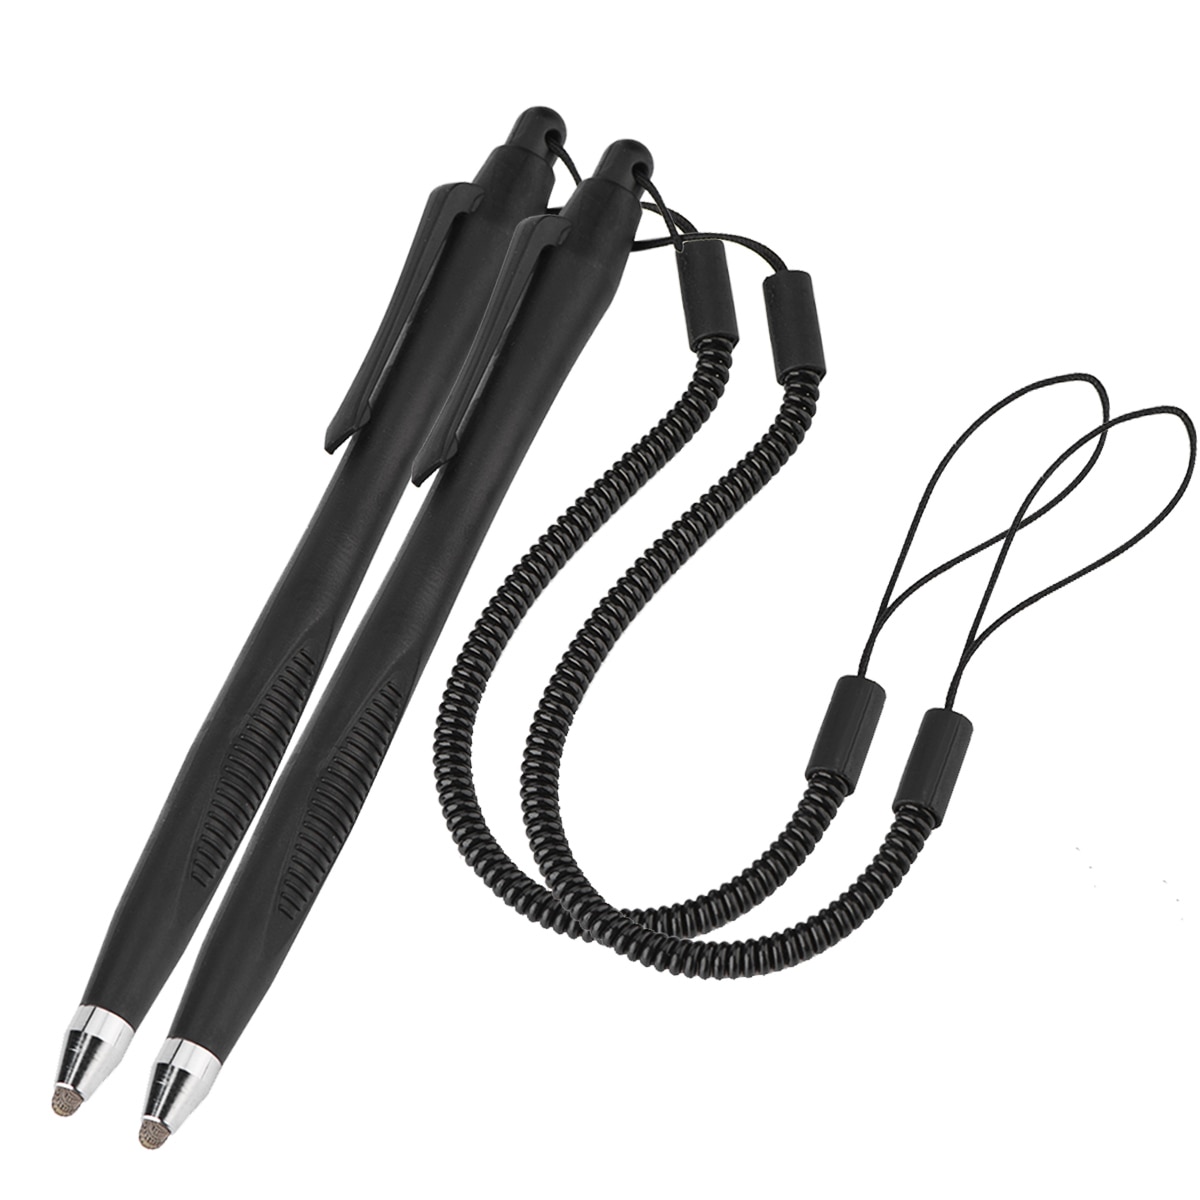 2 Stuks Stylus Touch Screen Stylus Pen Stylus Schrijven Tekening Pennen Voor Telefoon Tablet Pc Voor Huawei Mate 9